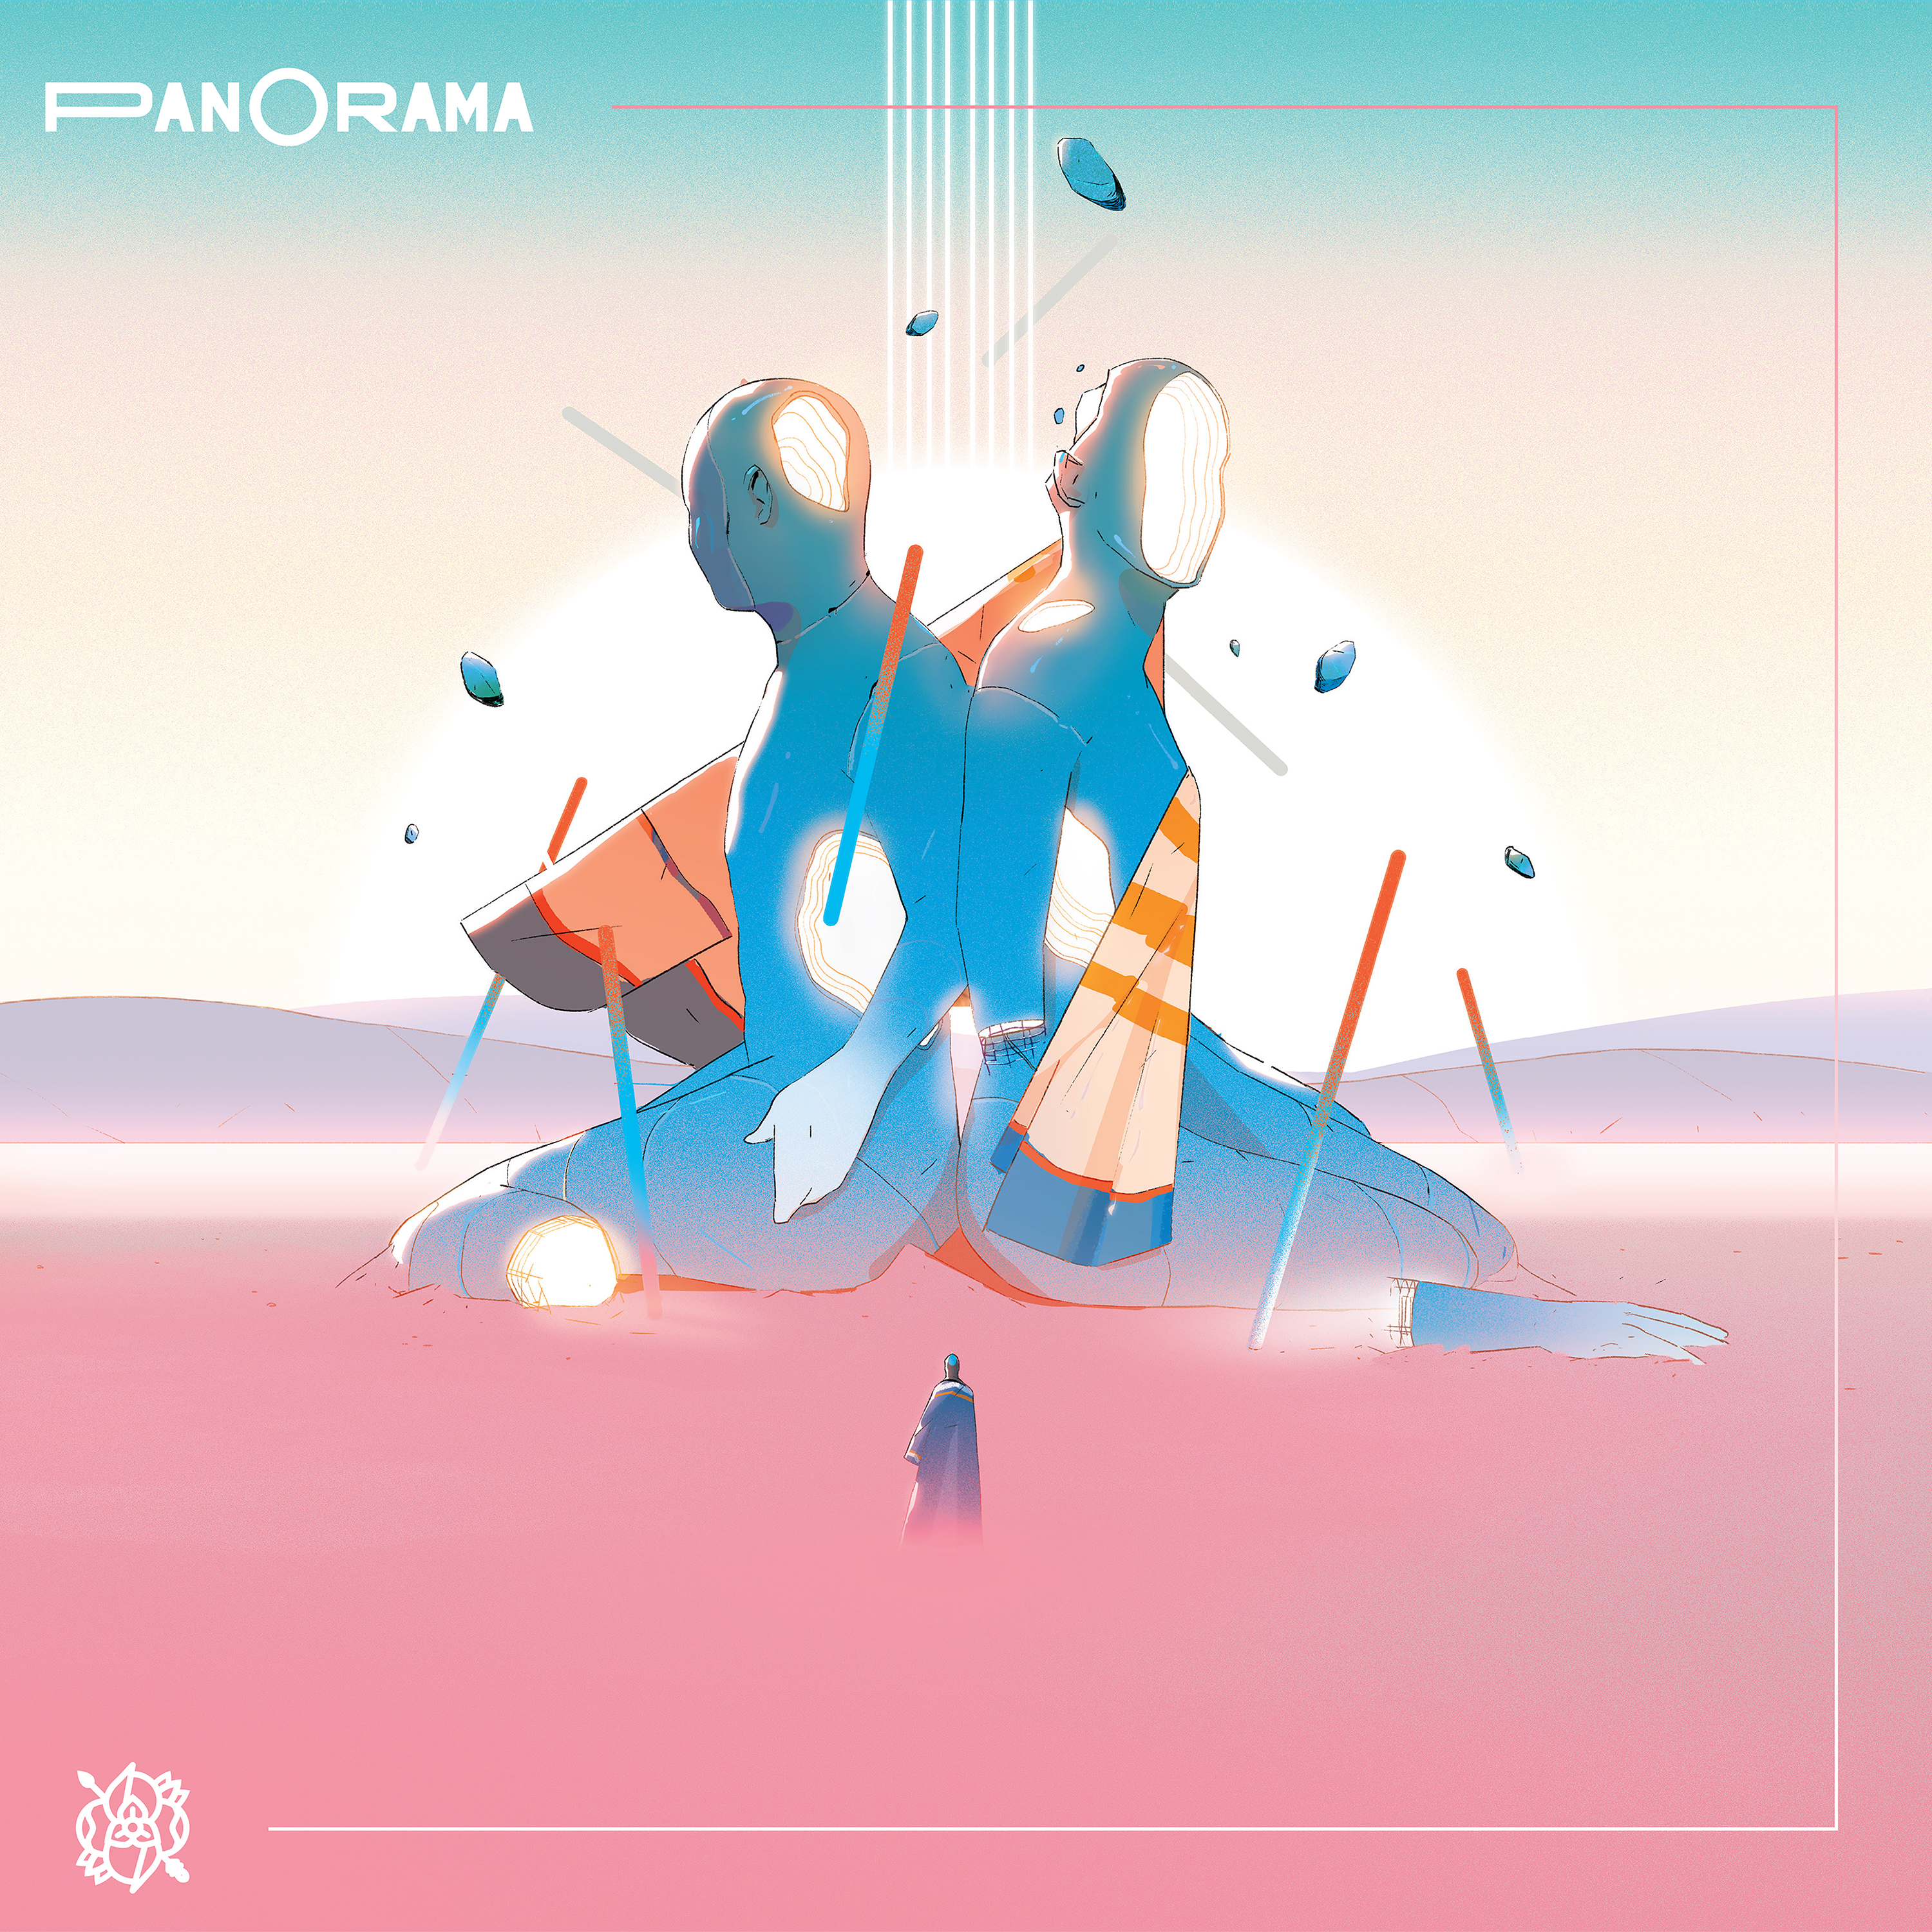 Album Art for "Panorama" by La Dispute